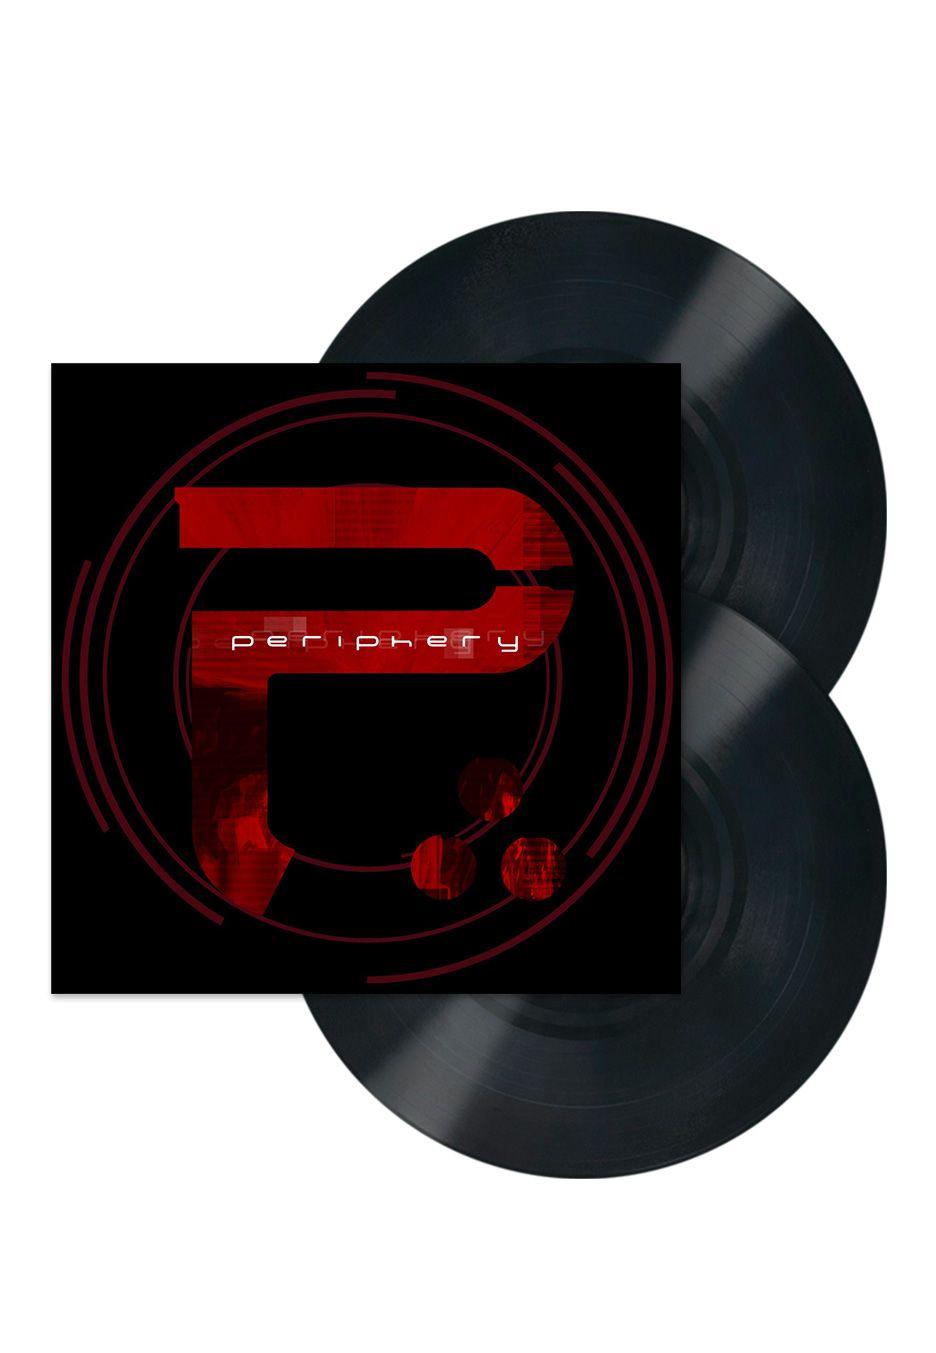 Periphery Logo - Periphery - Periphery II - 2 LP + CD - Official Metal Merchandise ...